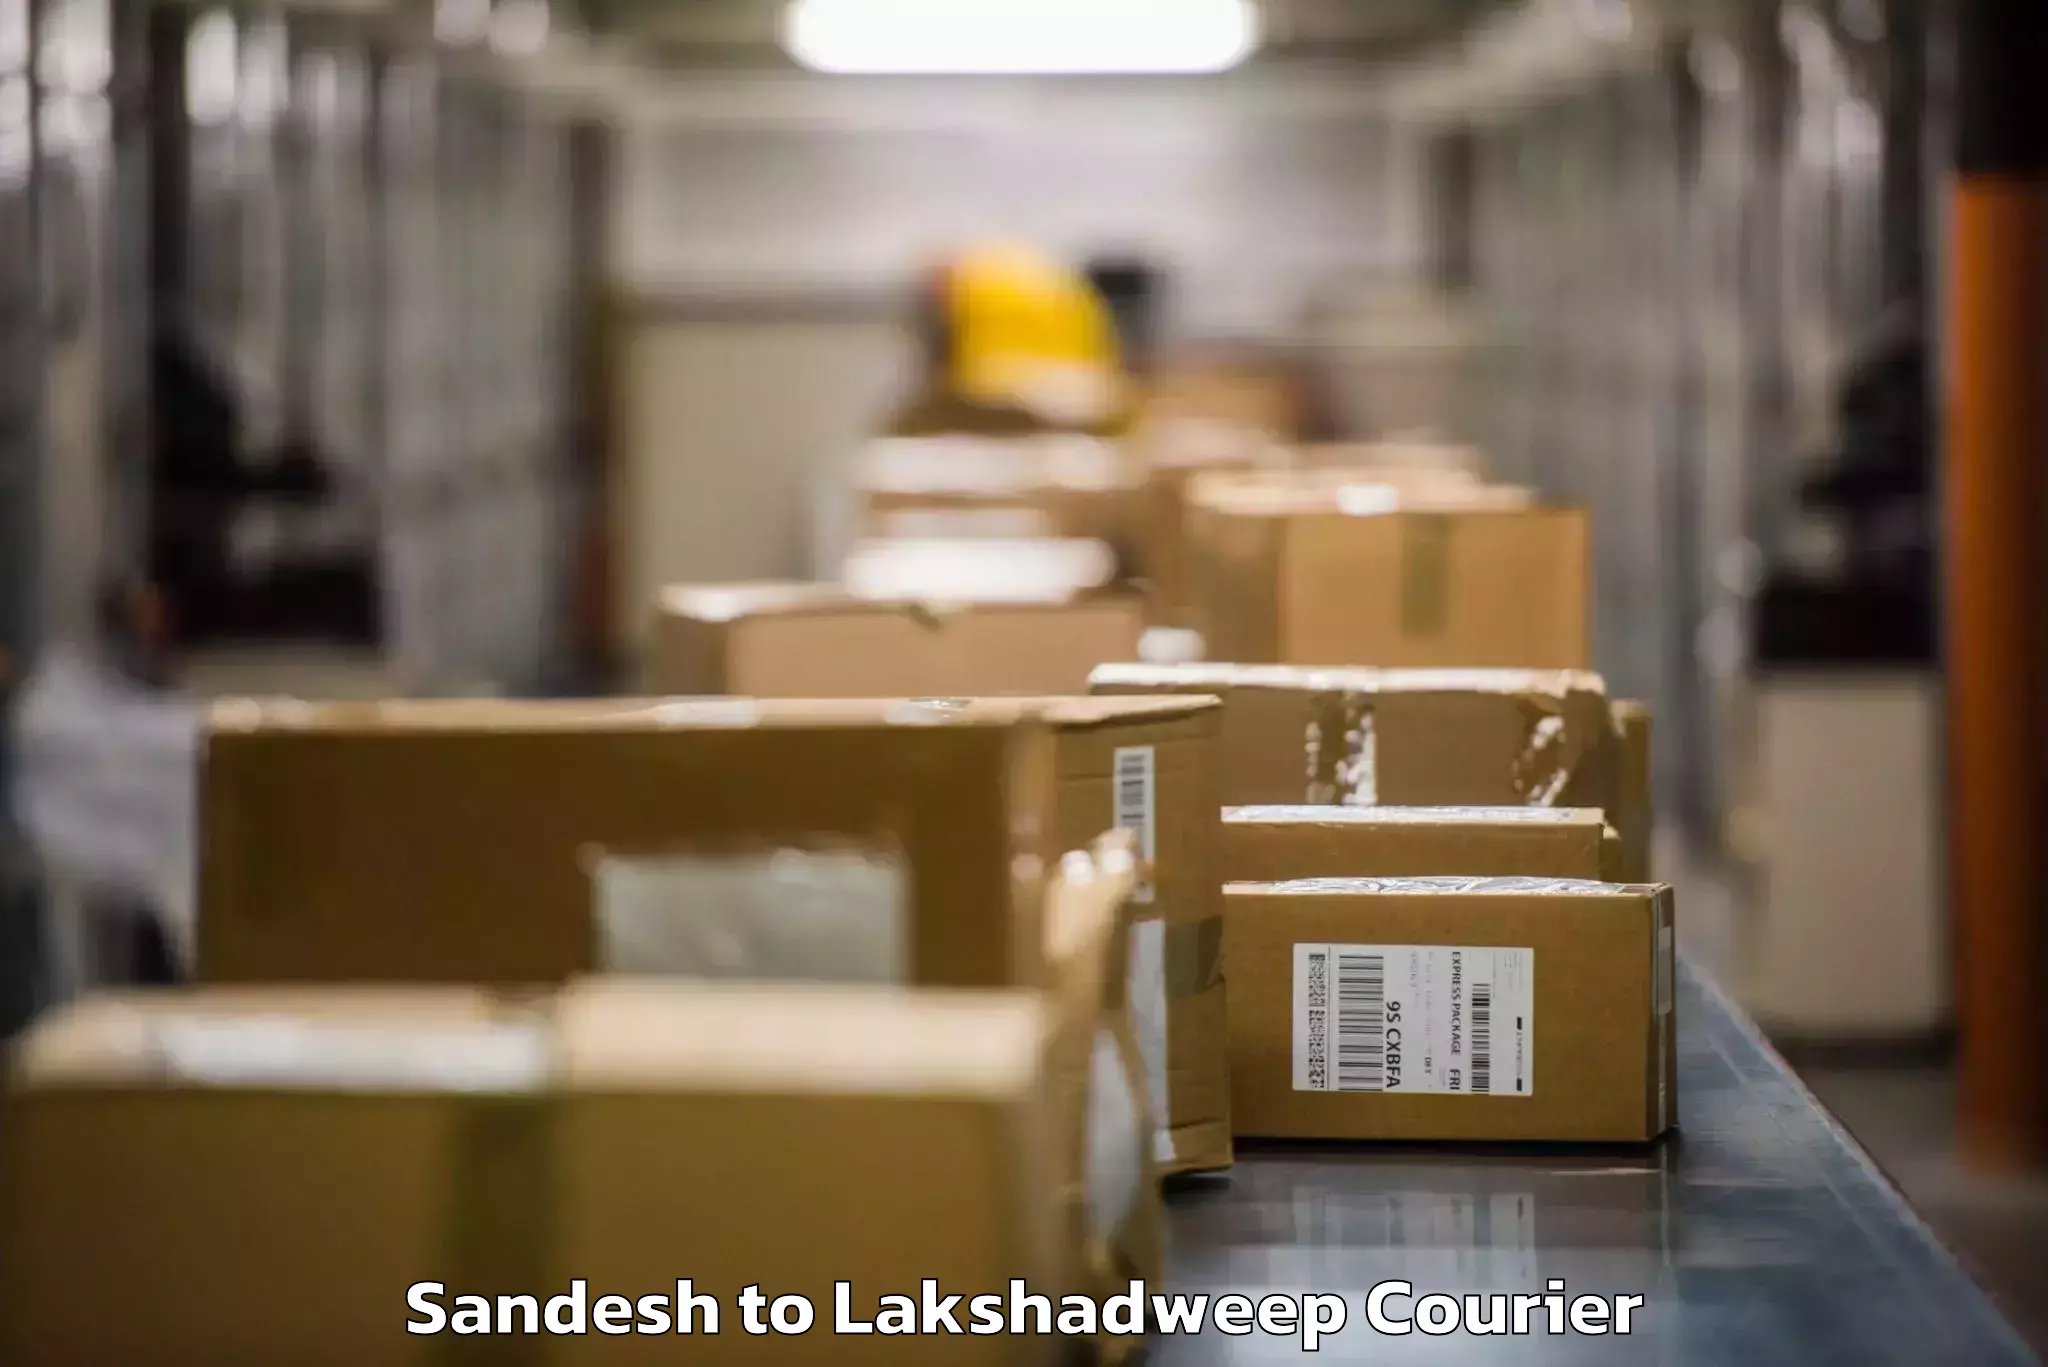 Baggage shipping service Sandesh to Lakshadweep